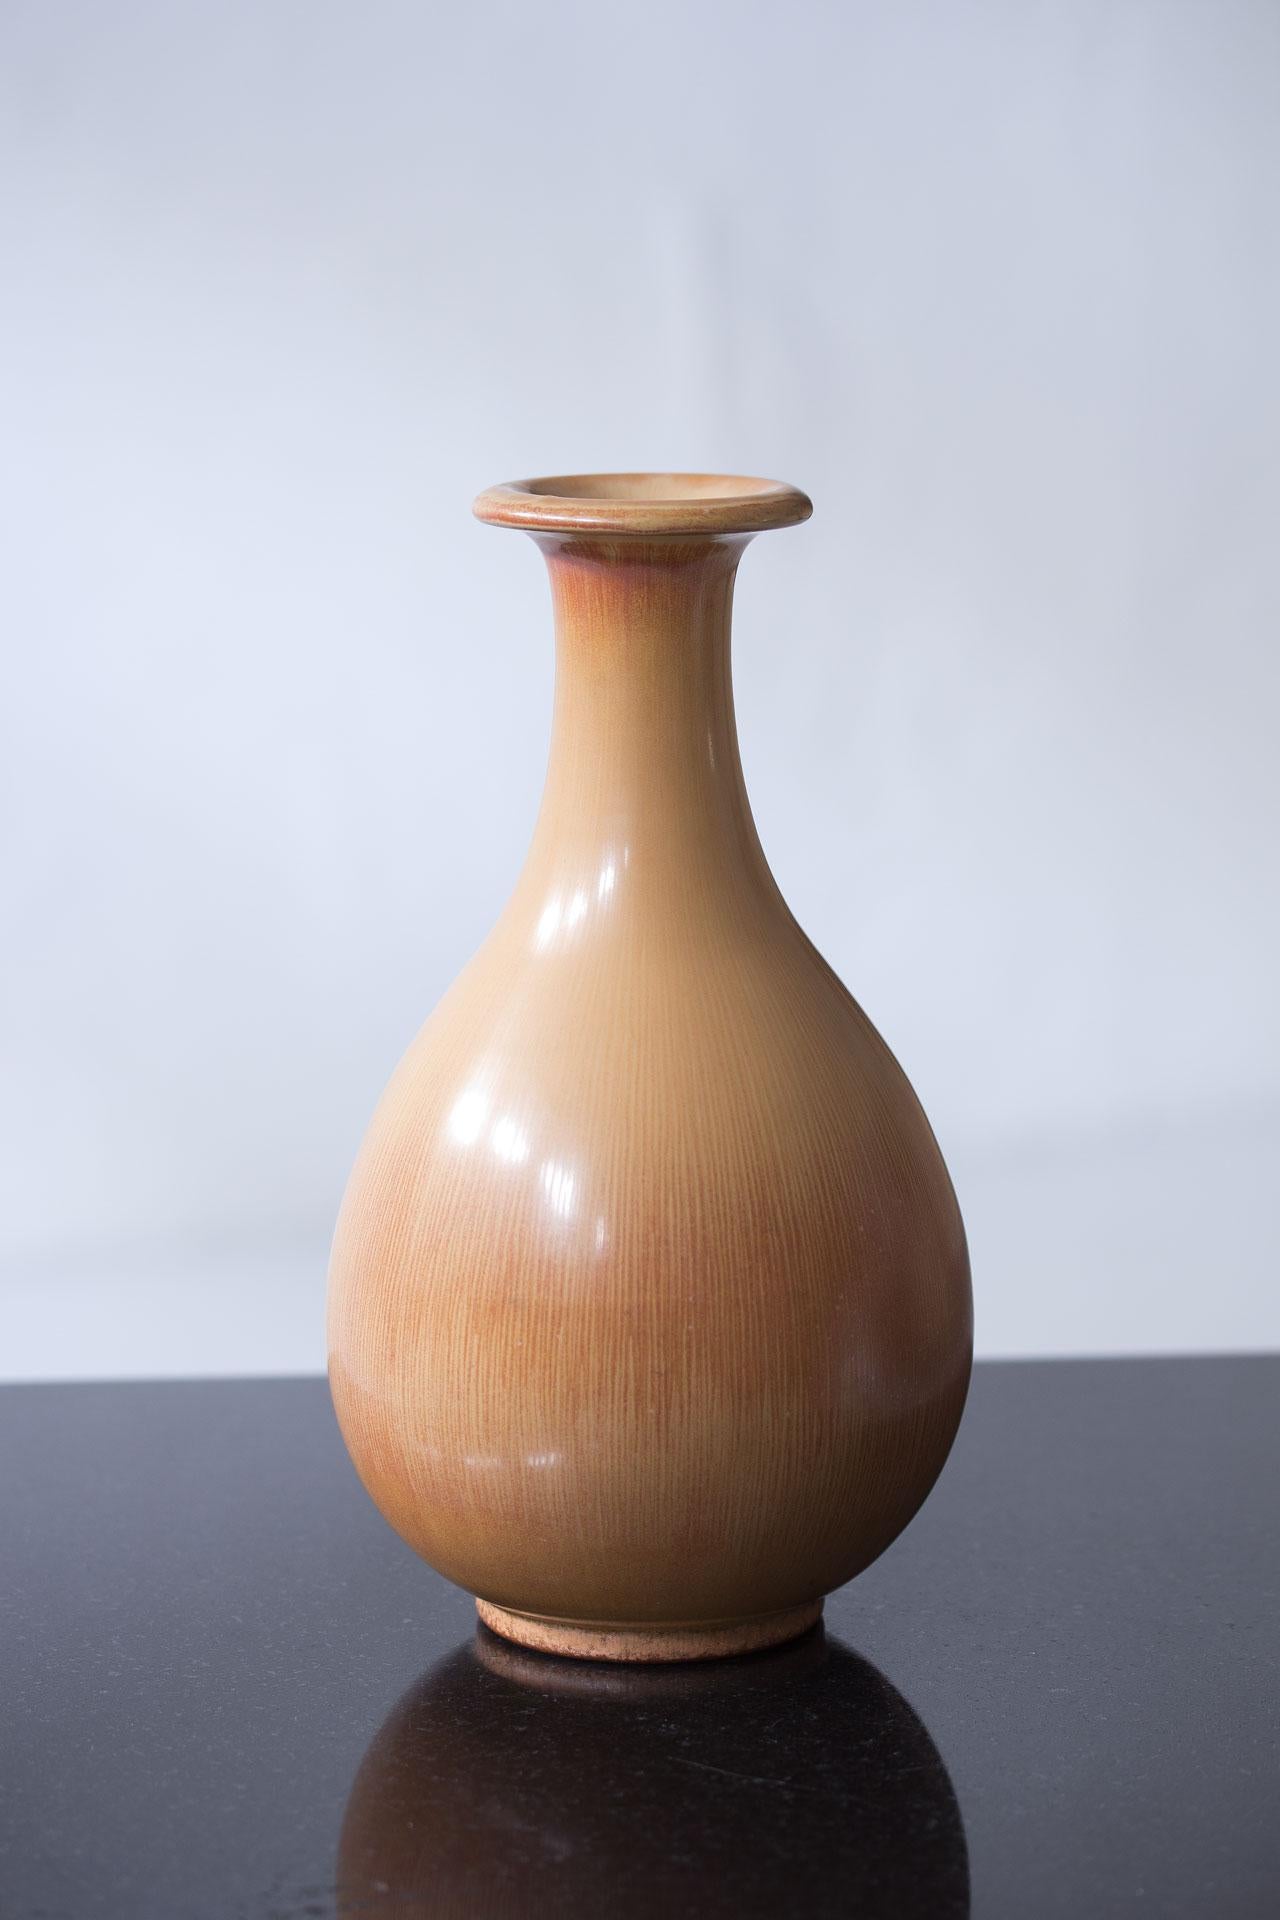 Magnifique vase en céramique conçu par Gunnar Nylund, fabriqué par Rörstrand en Suède dans les années 1940. Réalisé en grès avec une glaçure au poil de lièvre de couleur sable à ocre rouge.

Gunnar Nylund était directeur artistique de la société de